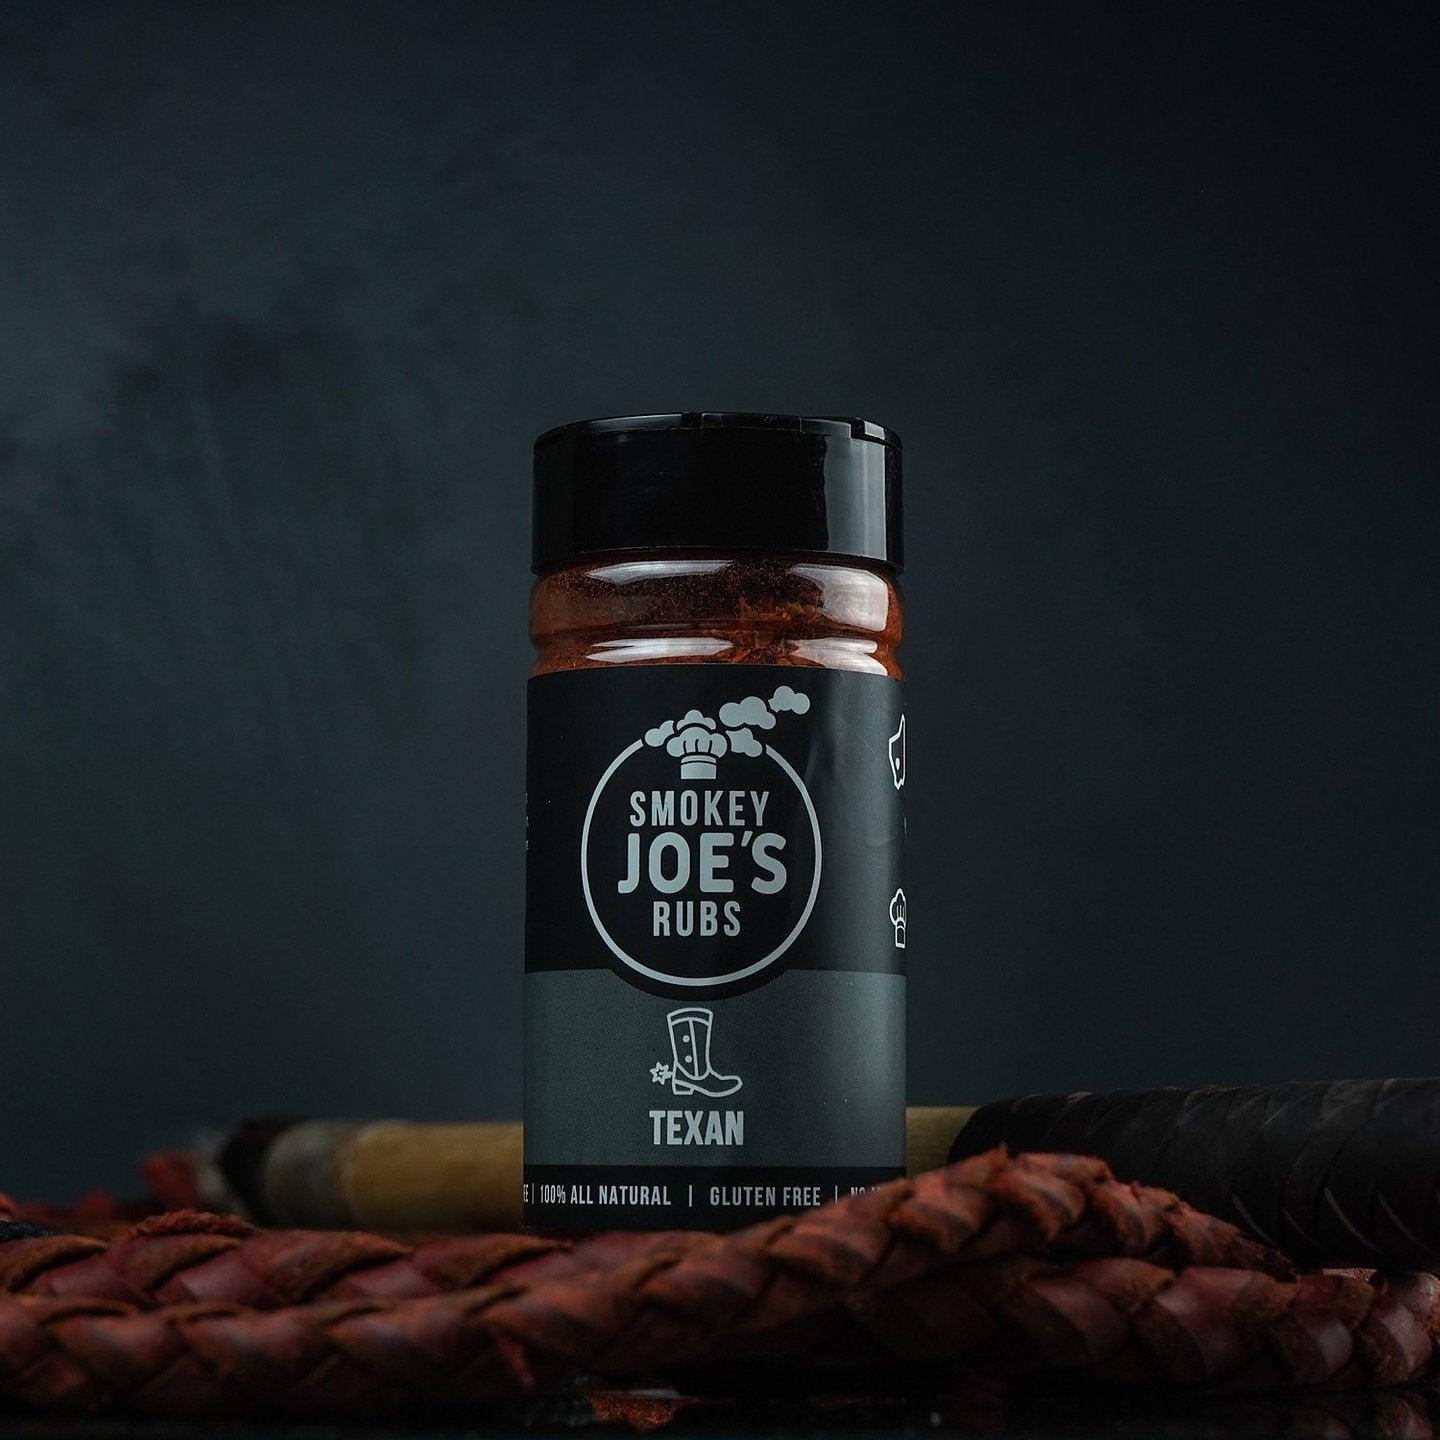 Smokey Joe's - BBQ Essentials Pack - Joe's BBQs